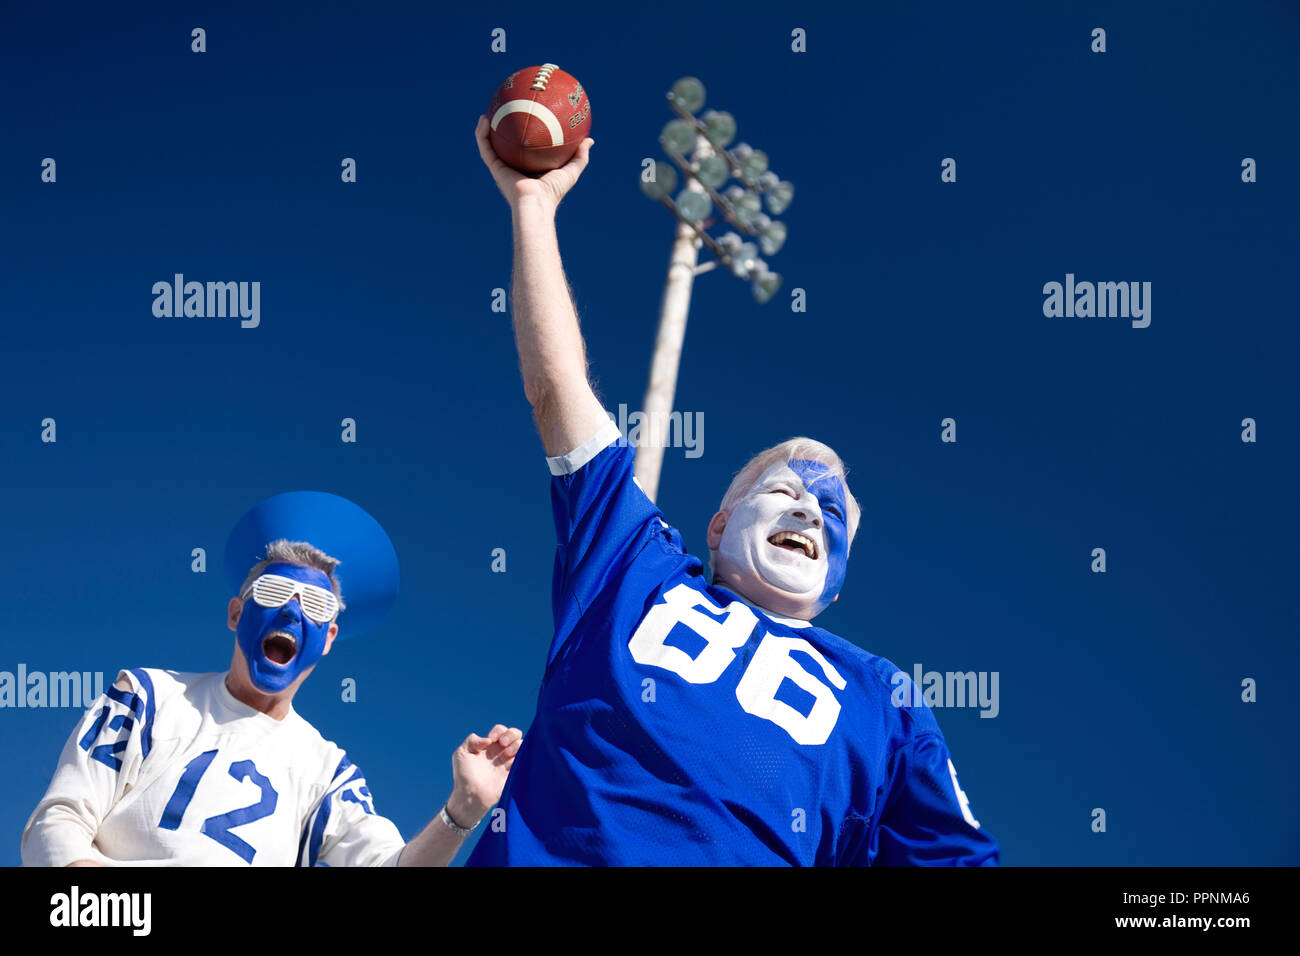 Coppia entusiasti appassionati di sport con facce dipinte in una partita di calcio, STATI UNITI D'AMERICA Foto Stock